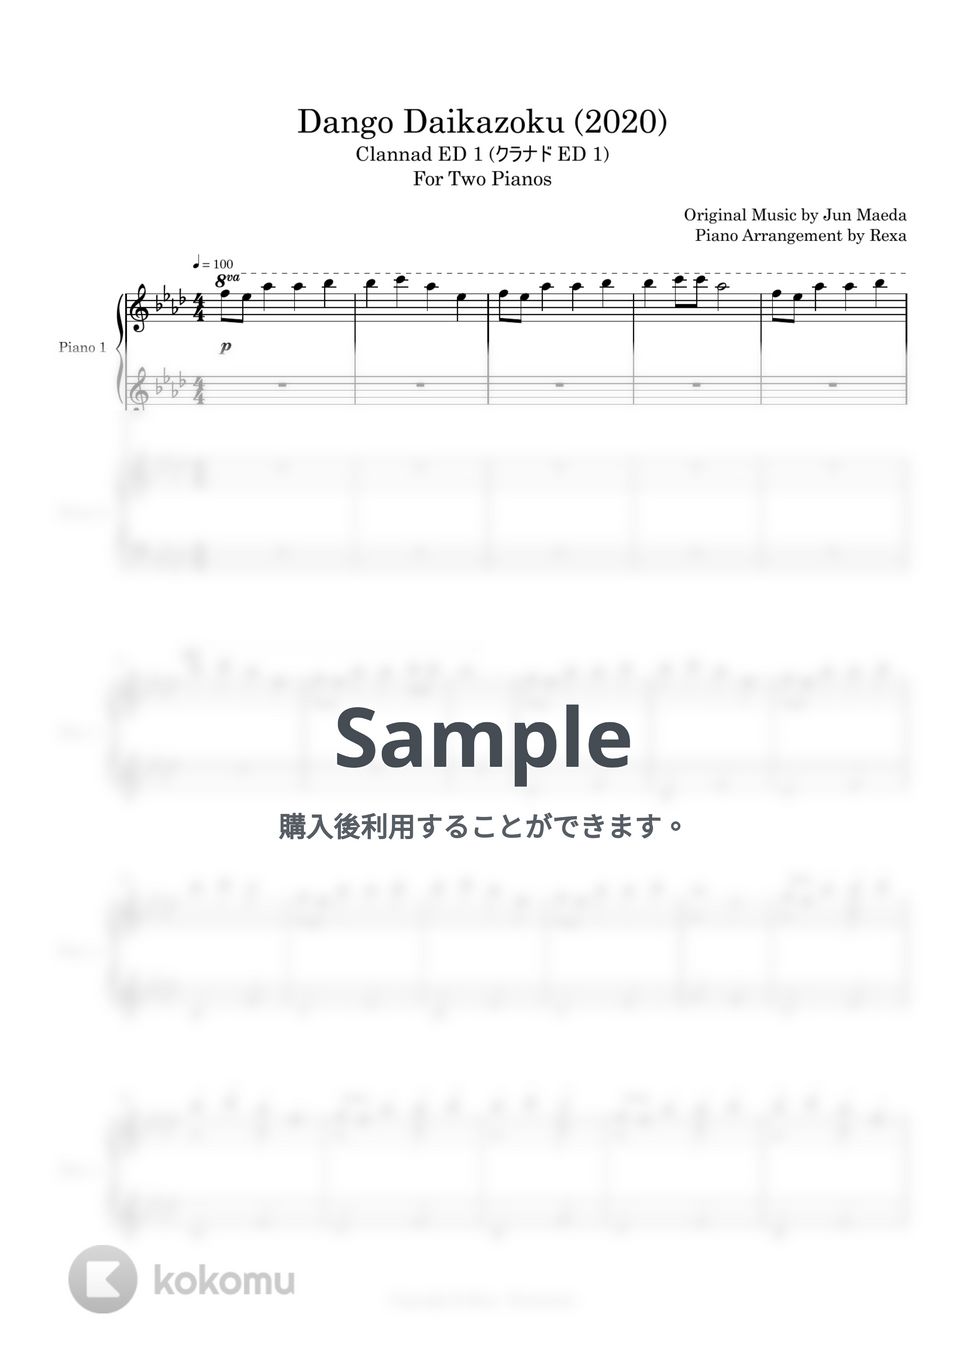 麻枝 准, 茶太 - だんご大家族 (ピアノ連弾) by Rexa - Pianimusic